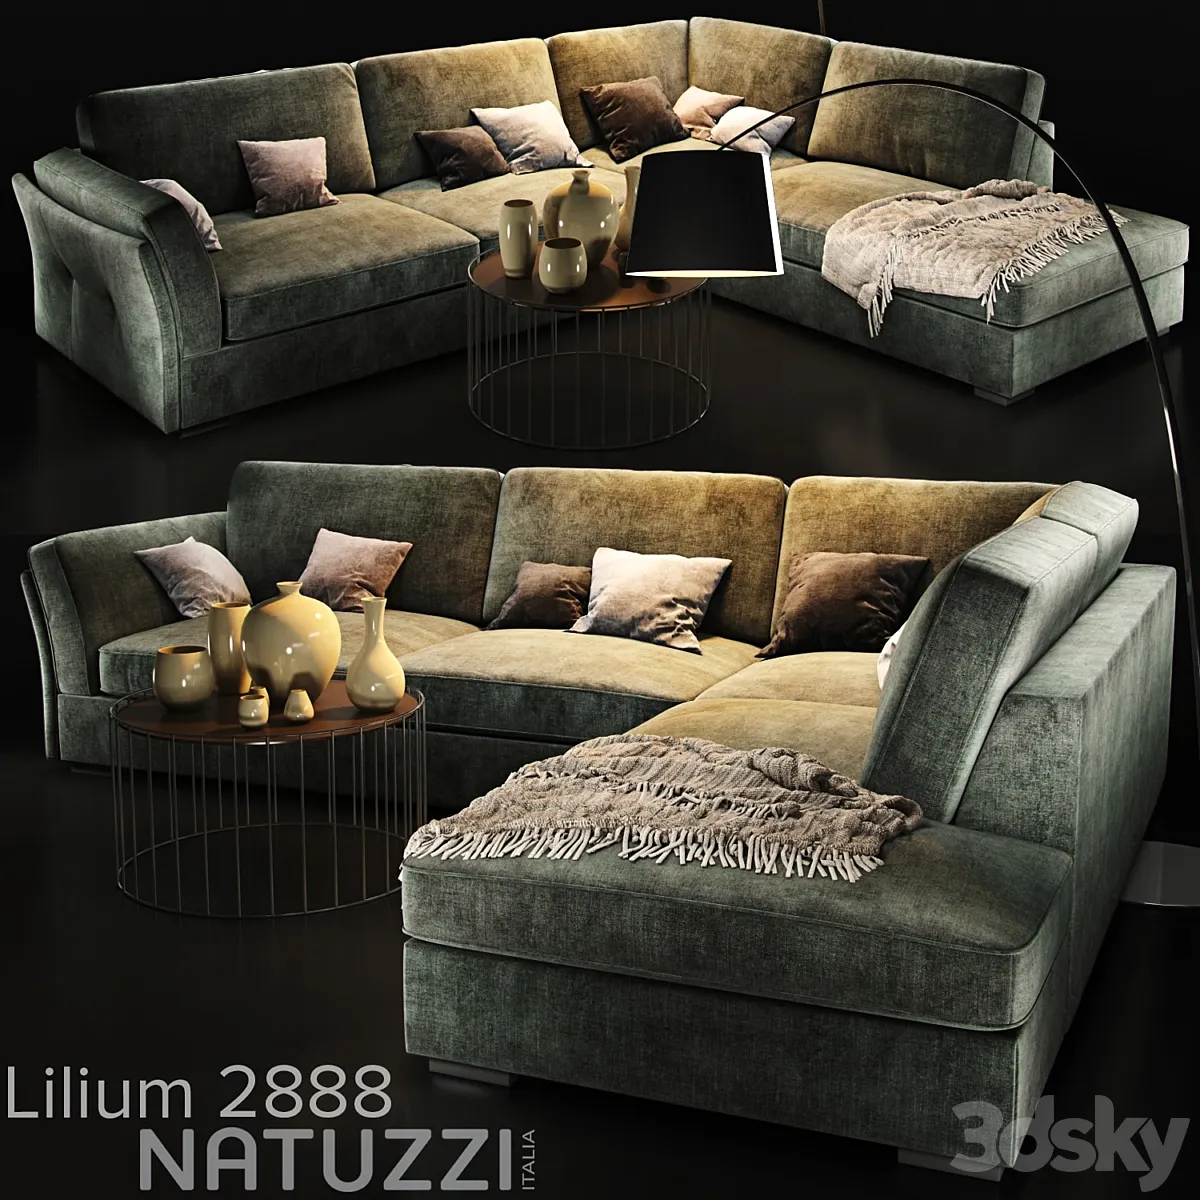 دانلود مدل سه بعدی مبل Sofa natuzzi Lilium